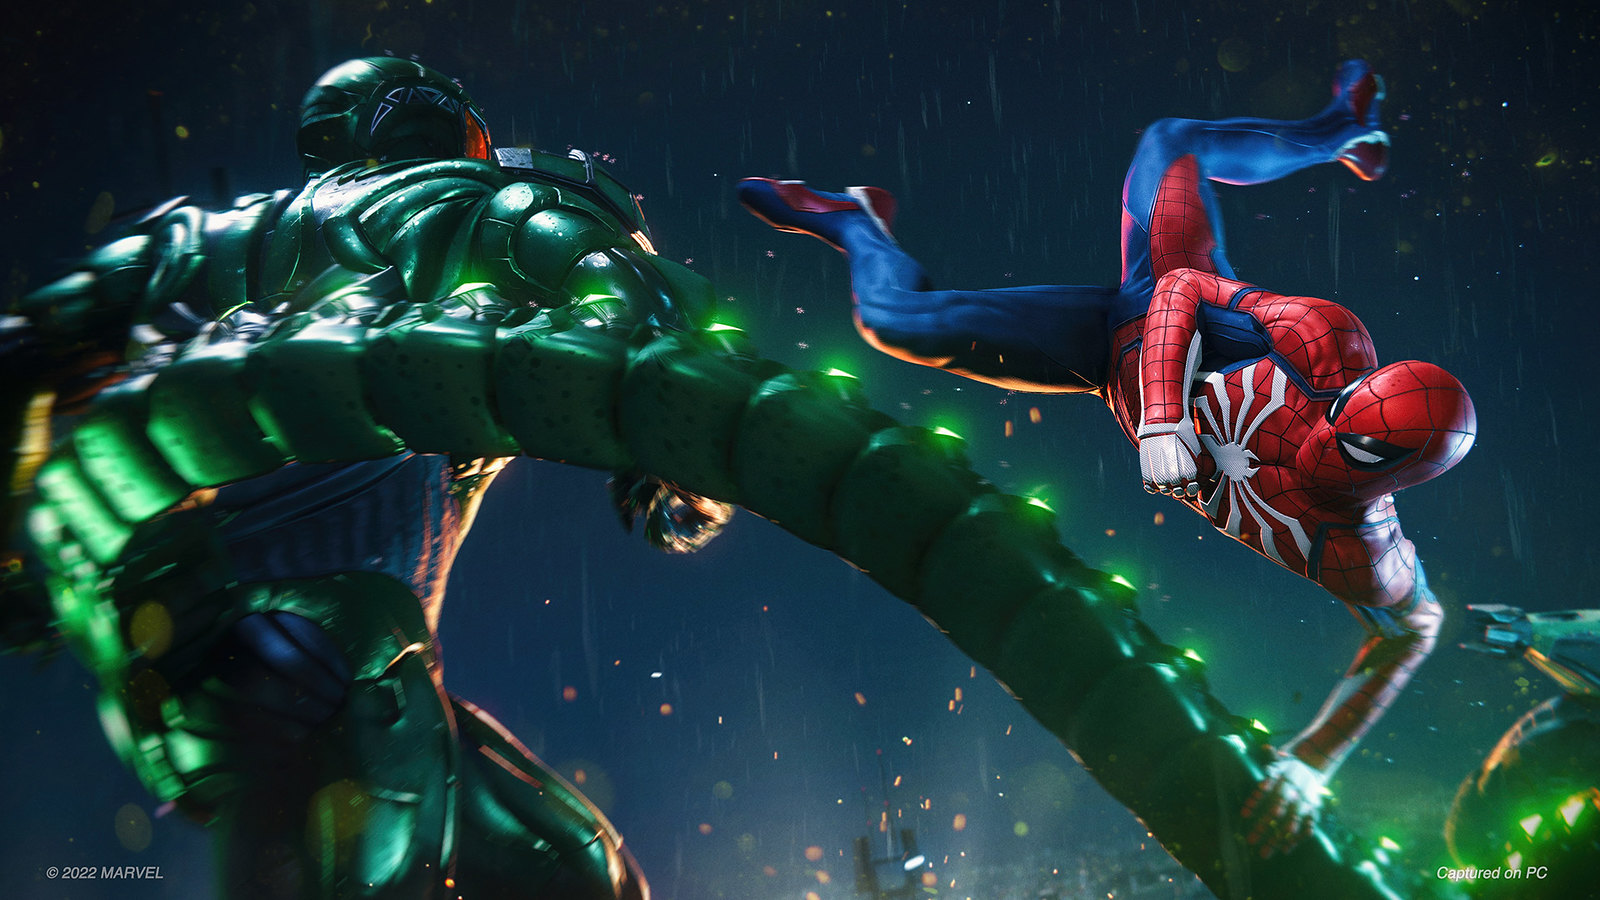 Immagine pubblicata in relazione al seguente contenuto: Spider-Man Remastered e Spider-Man: Miles Morales su PC entro fine 2022 | Nome immagine: news33355_Spider-Man_PC_2.jpg